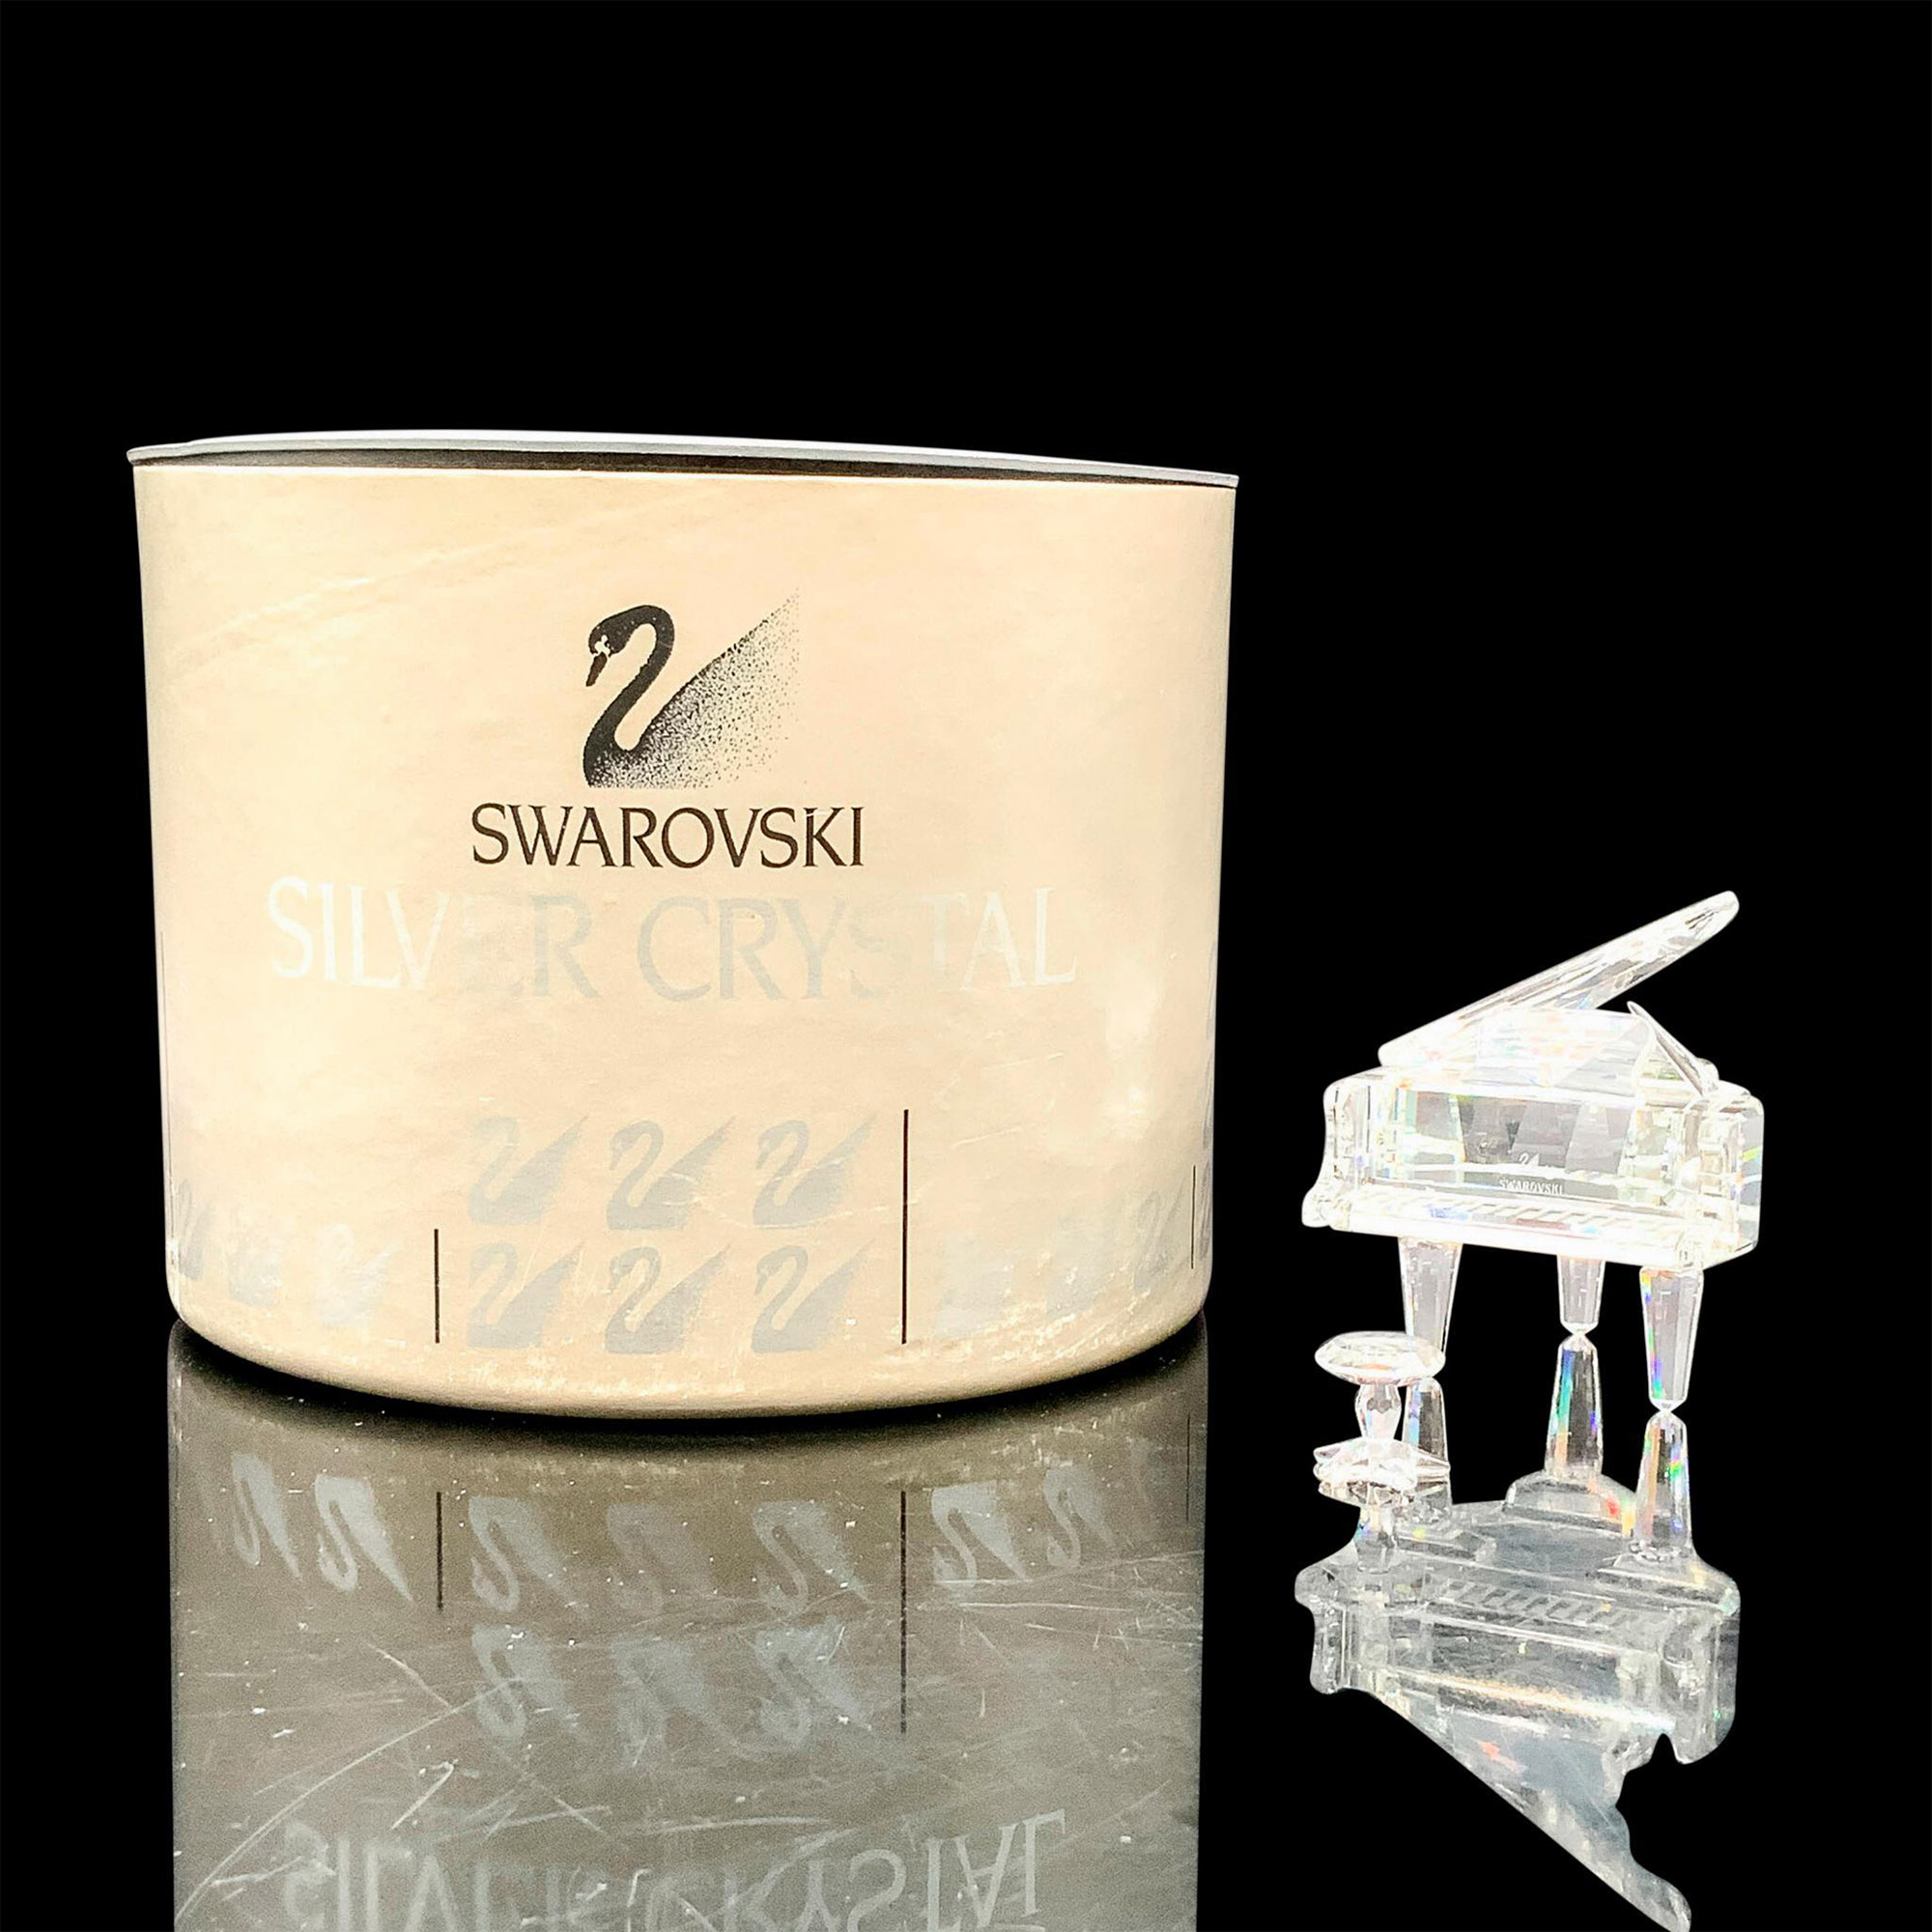 Pair of Swarovski Crystal Figurines, Piano and Stool - Image 4 of 4